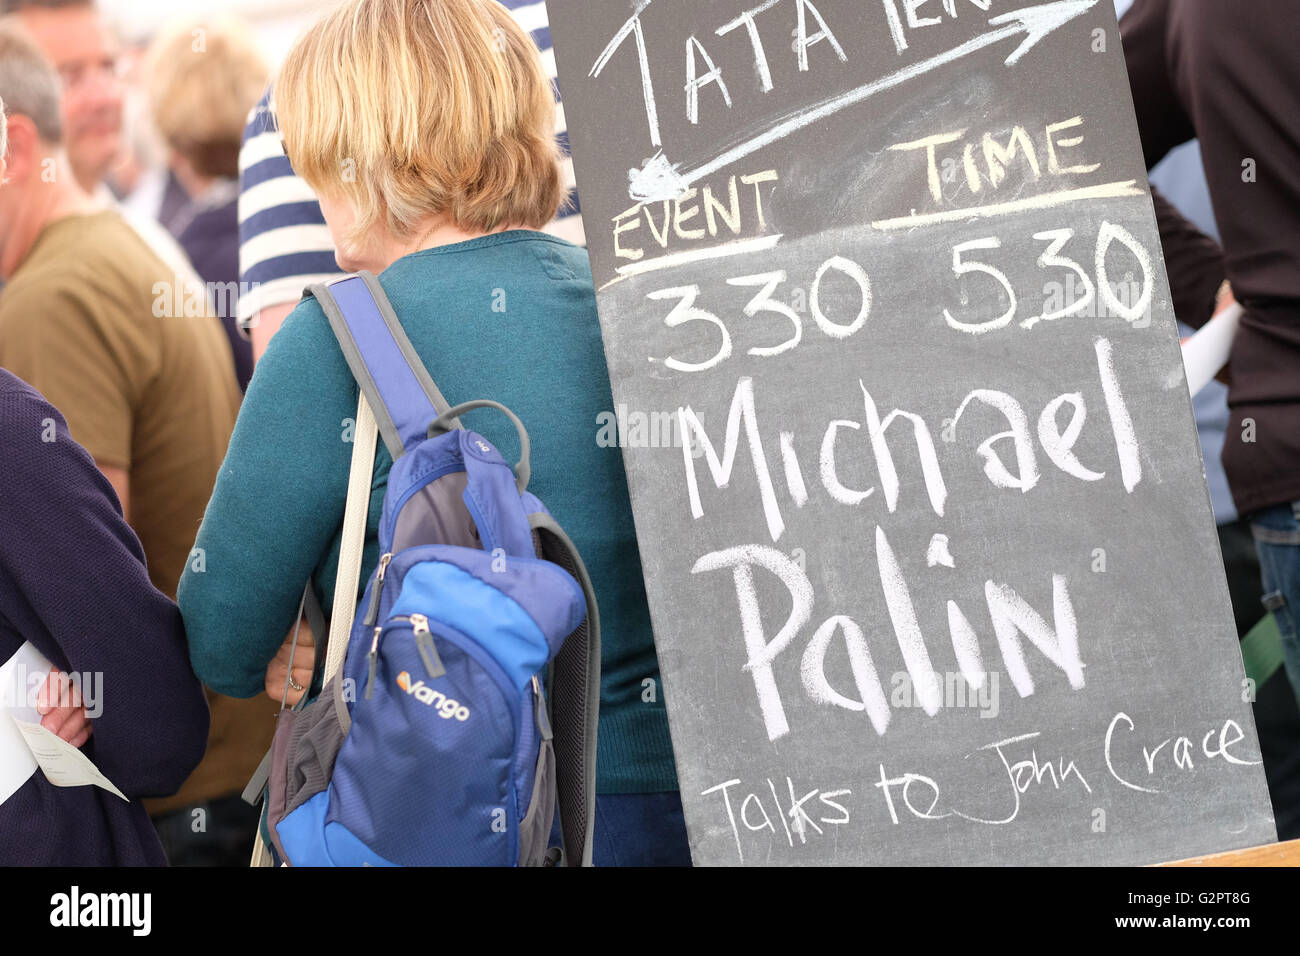 Festival di fieno, Wales, Regno Unito - Giugno 2016 - Grande code per il sell-out Michael Palin evento presso il Festival di fieno che inizia alle 17.30. Le preziose attore, scrittore, viaggiatore e diarist sarà parlare della sua vita. Foto Stock